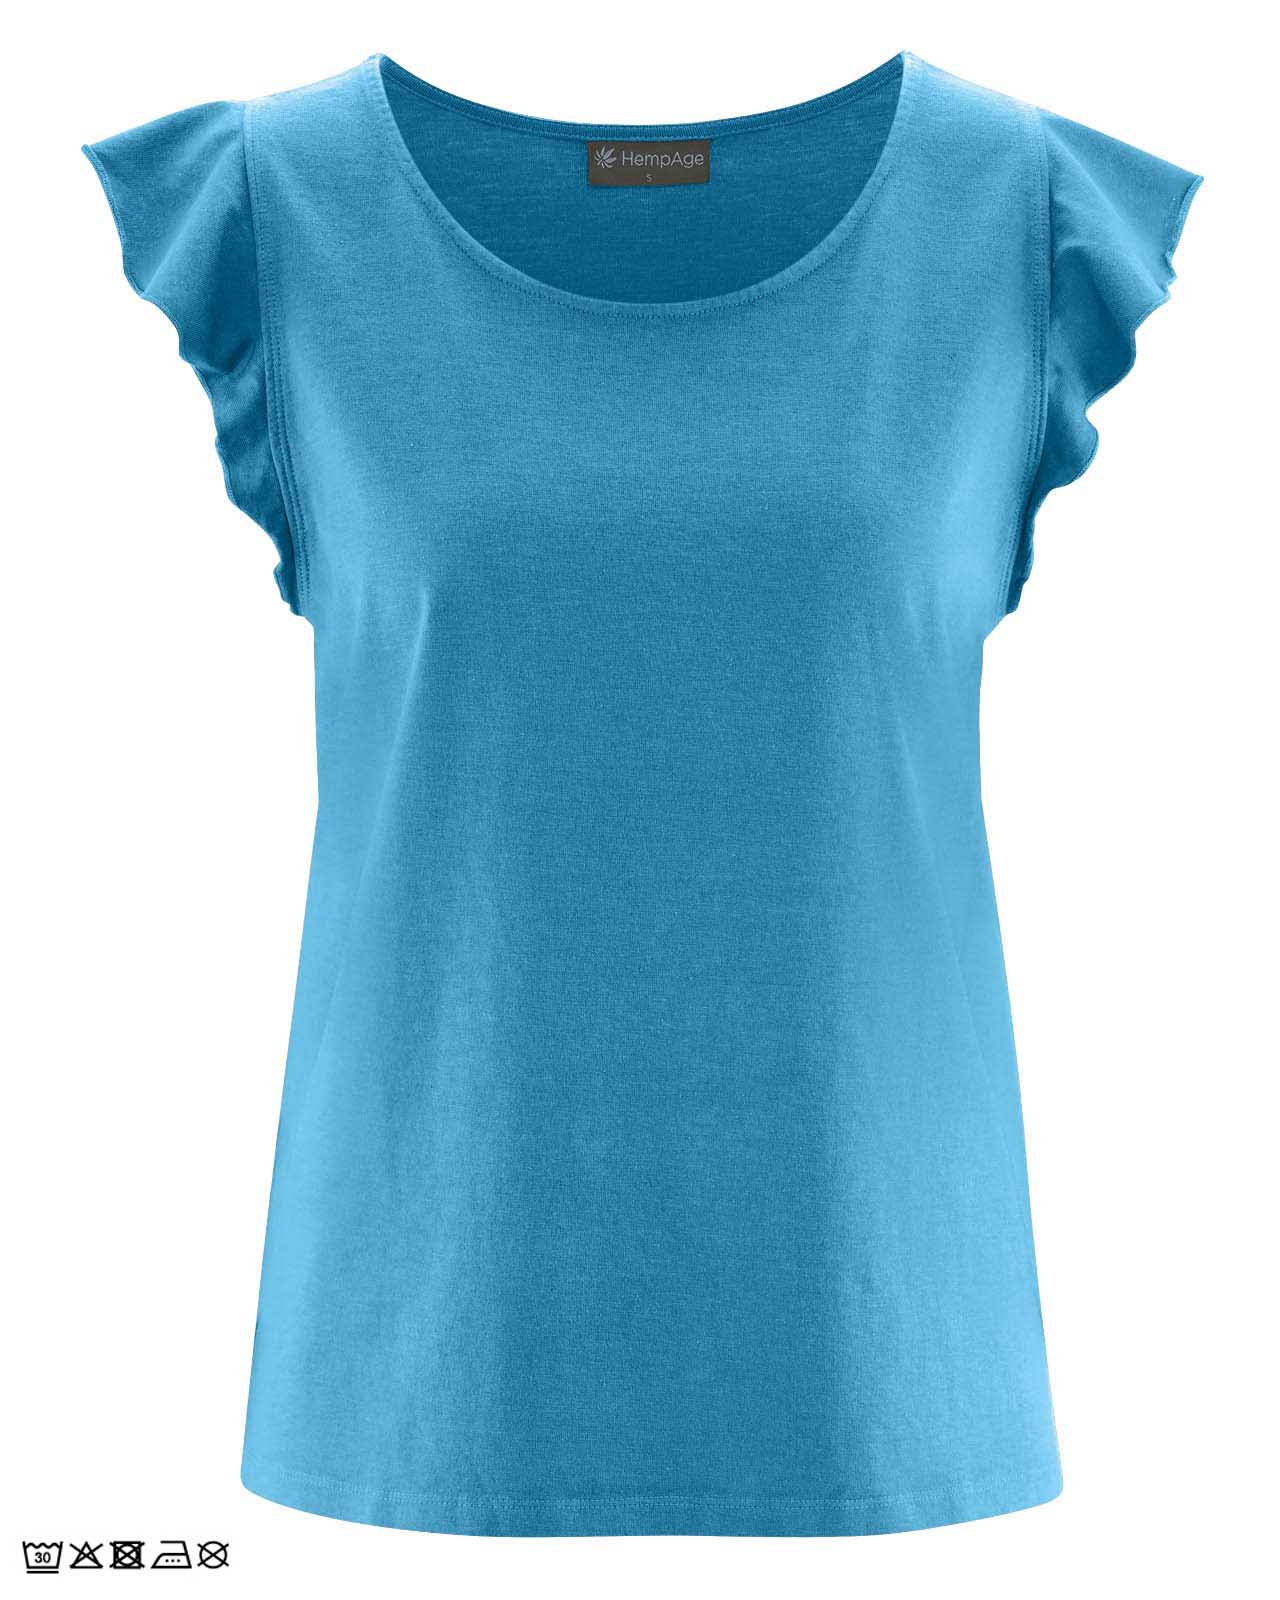 Tee-shirt-Femme-Manche-Volant-Bleu